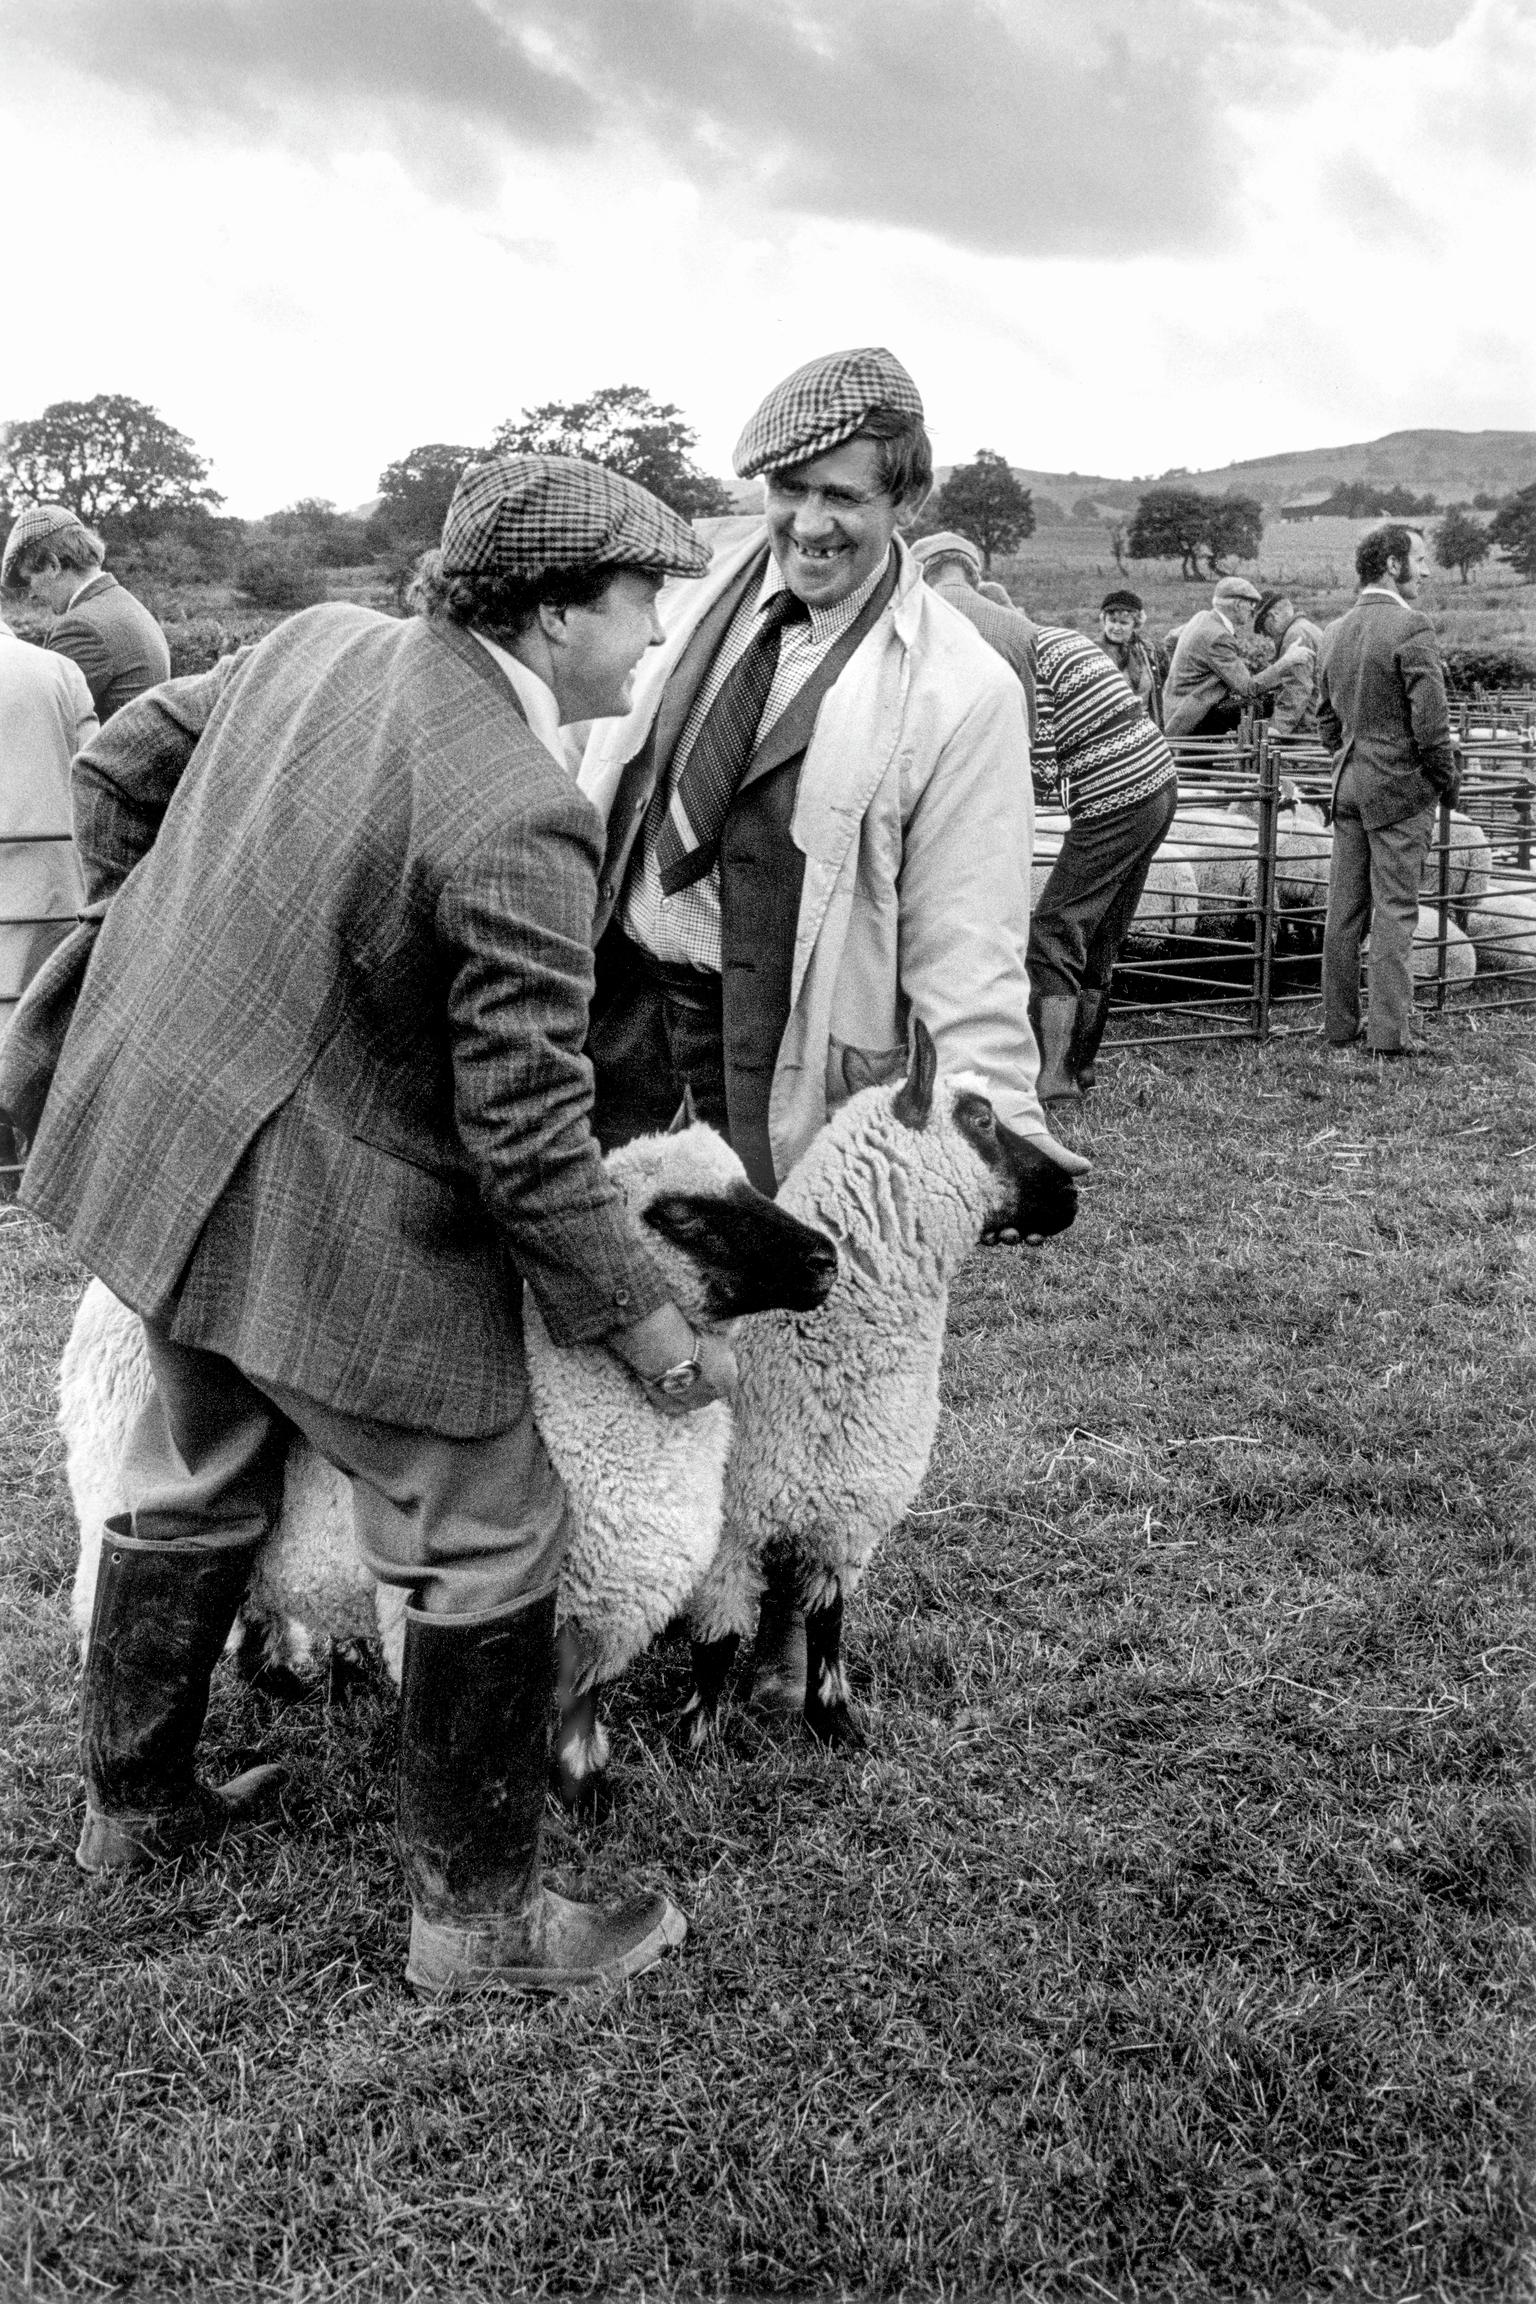 Showing sheep. LLanafan Fawr, Wales